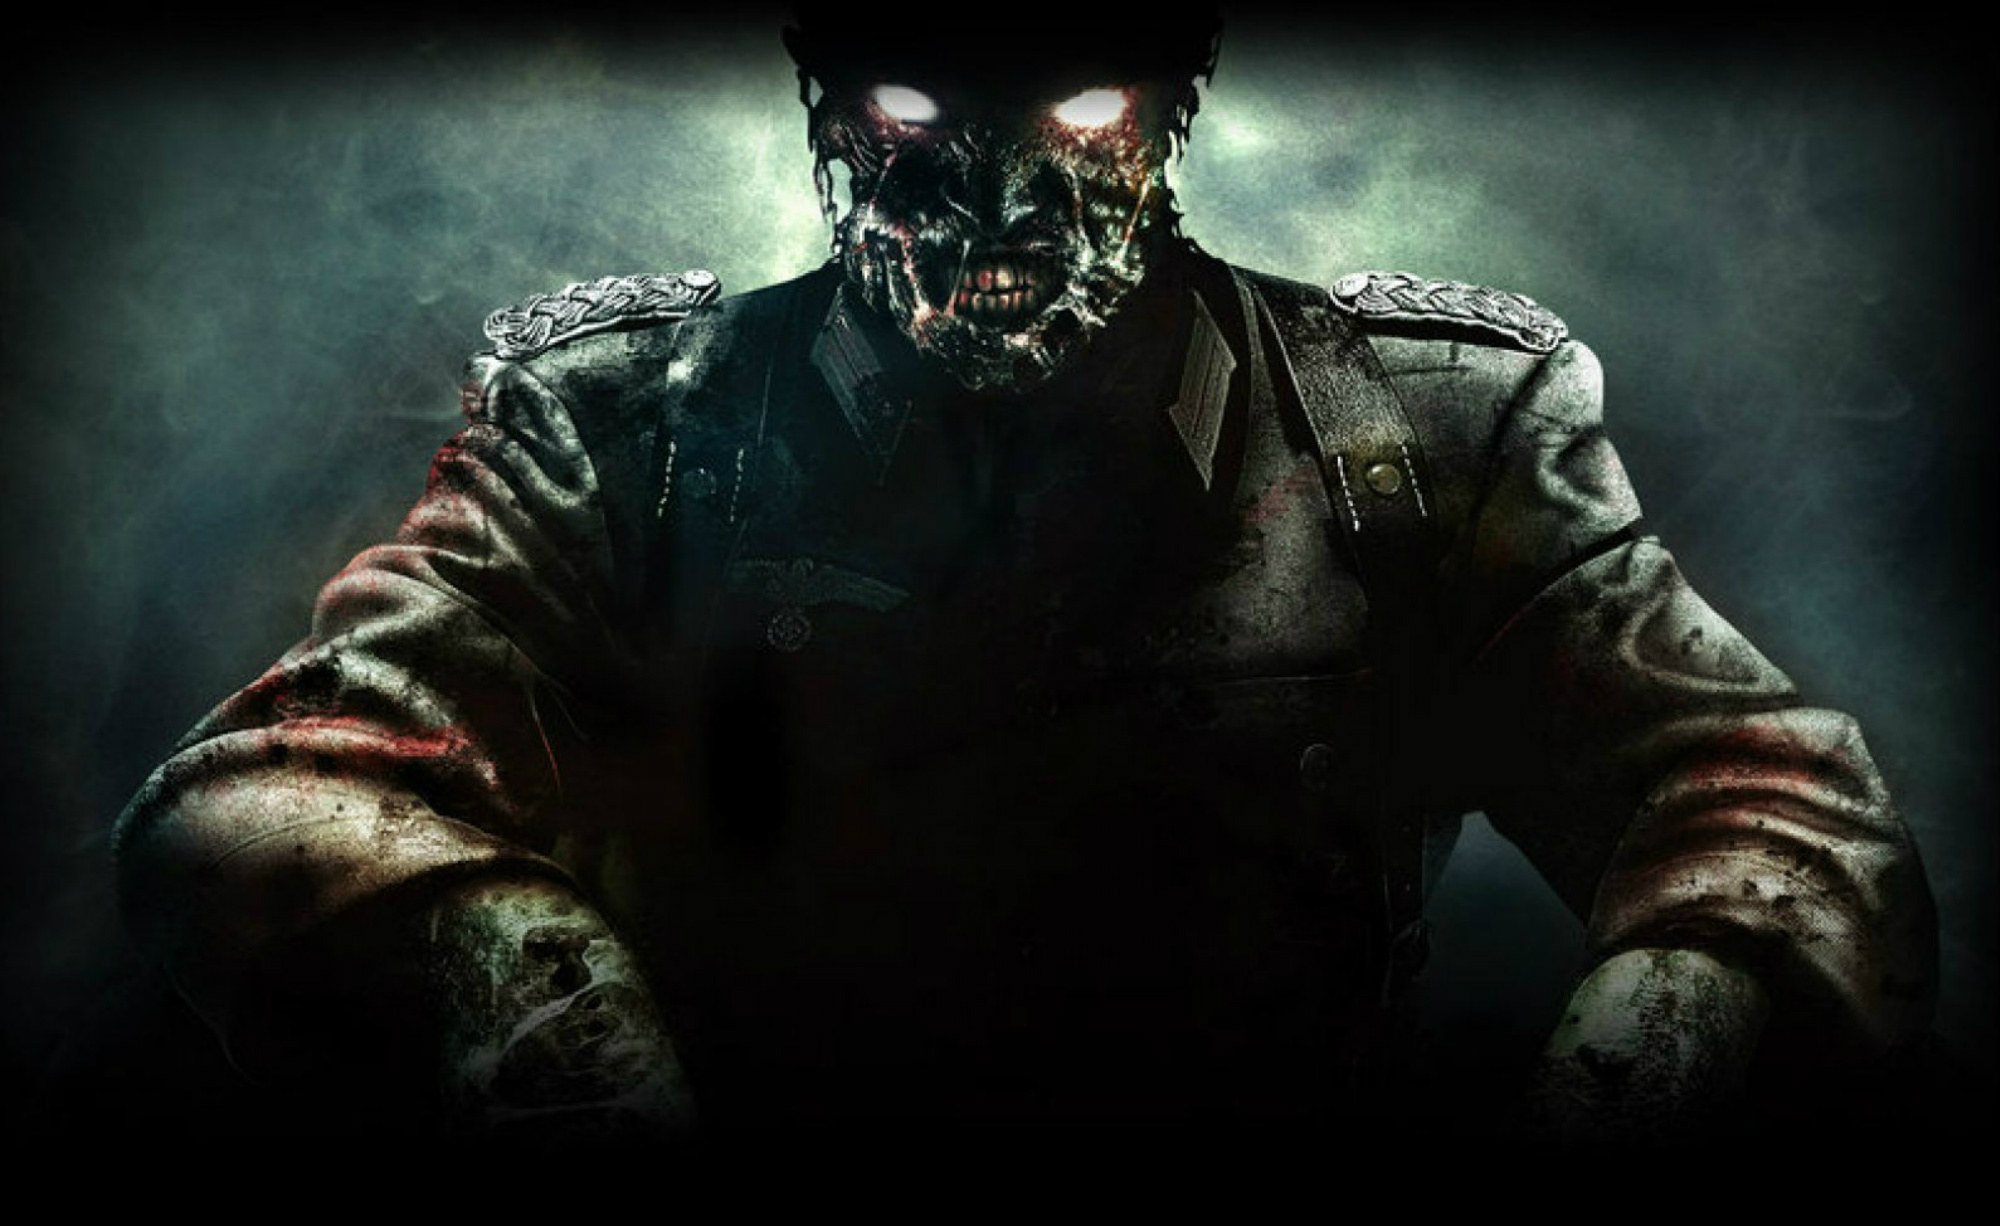 Image Wiki Background Call Of Duty Zombies Wiki Fandom Powered By Wikia